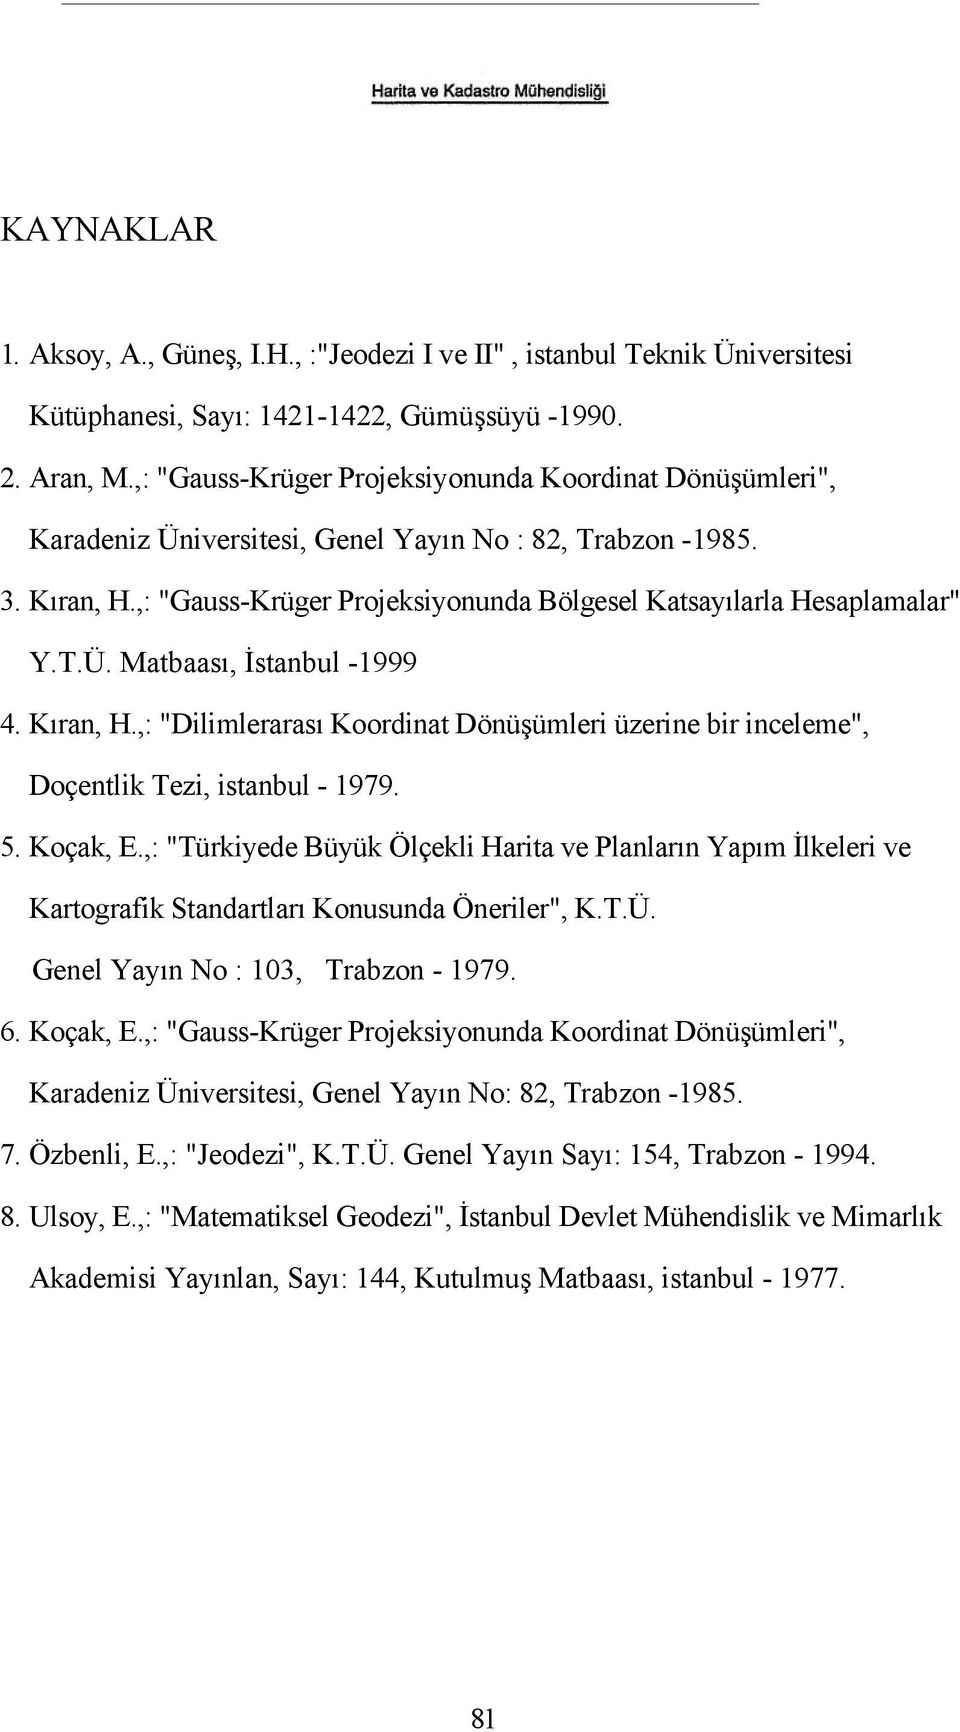 T.Ü. Matbaası, İstanbul -1999 4. Kıran, H.,: "Dilimlerarası Koordinat Dönüşümleri üzerine bir inceleme", Doçentlik Tezi, istanbul - 1979. 5. Koçak, E.